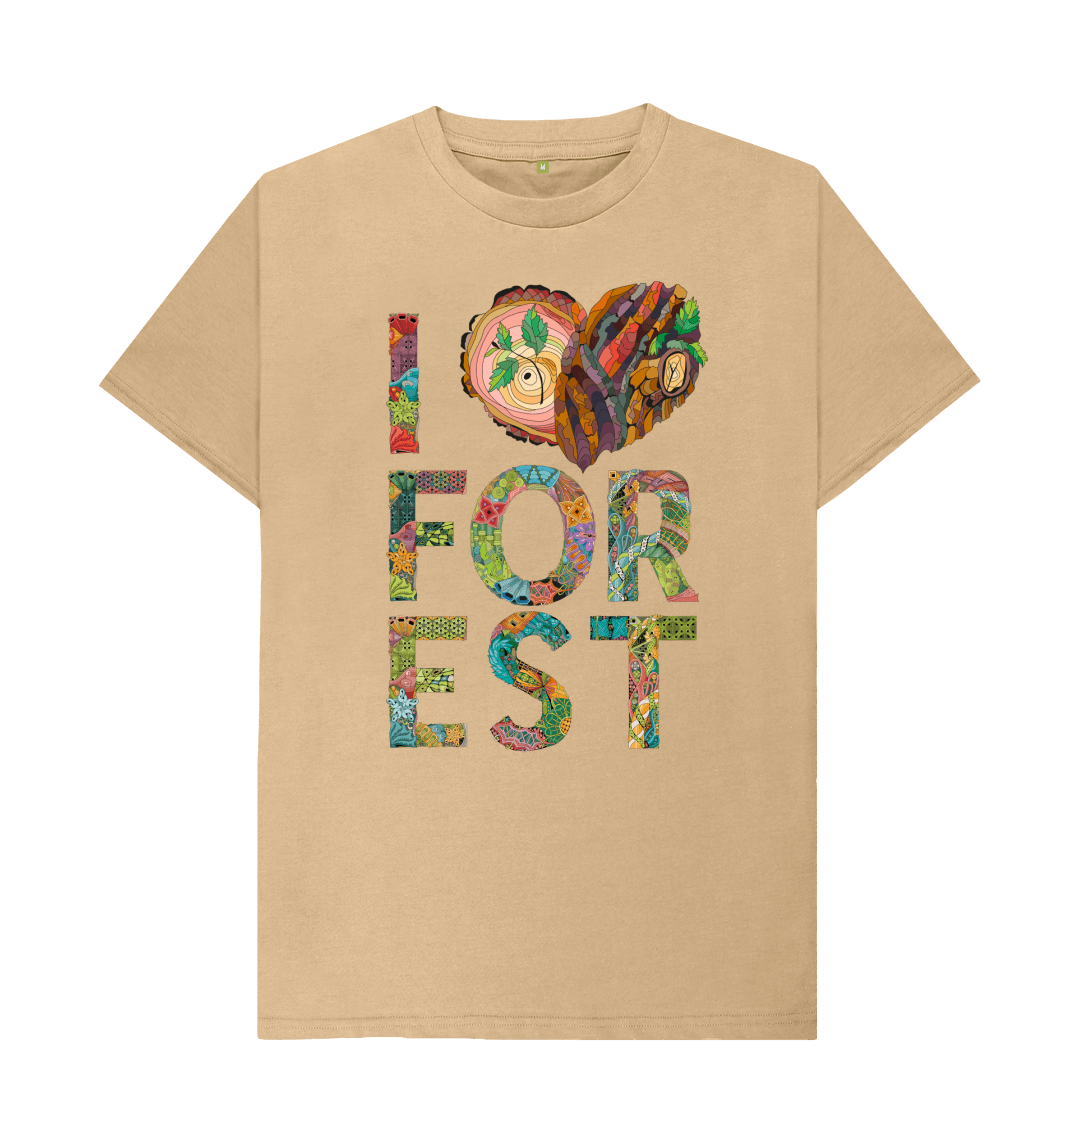 I Love Forest T Shirt - Unique Design & Eco Friendly!